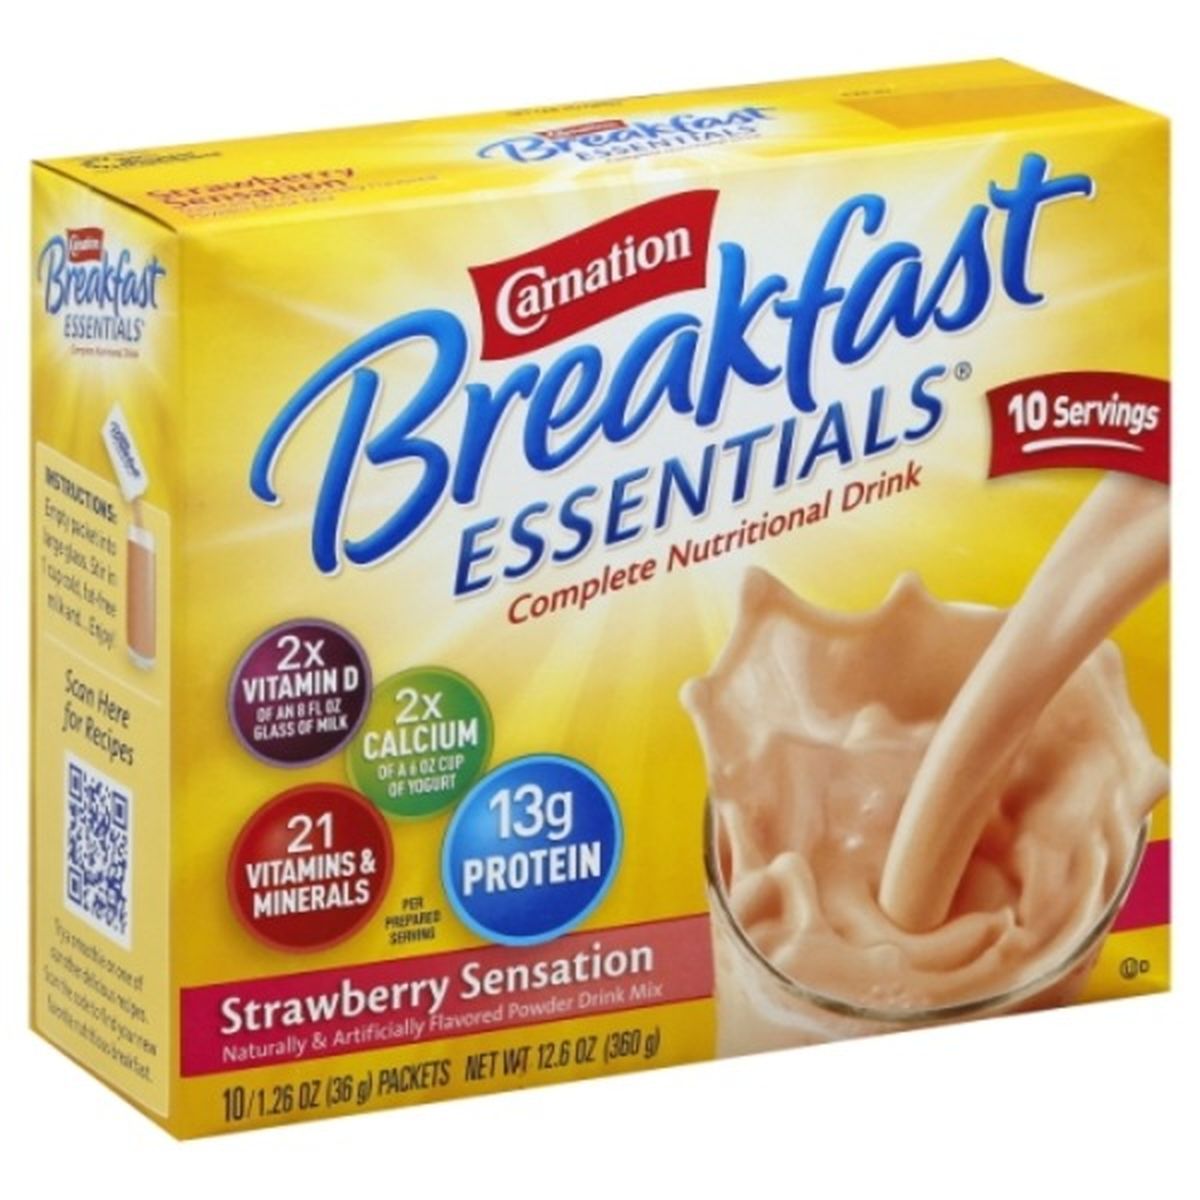 Calories in Carnation Breakfast Essentials Breakfast Essentials Nutritional Drink, Complete, Strawberry Sensation